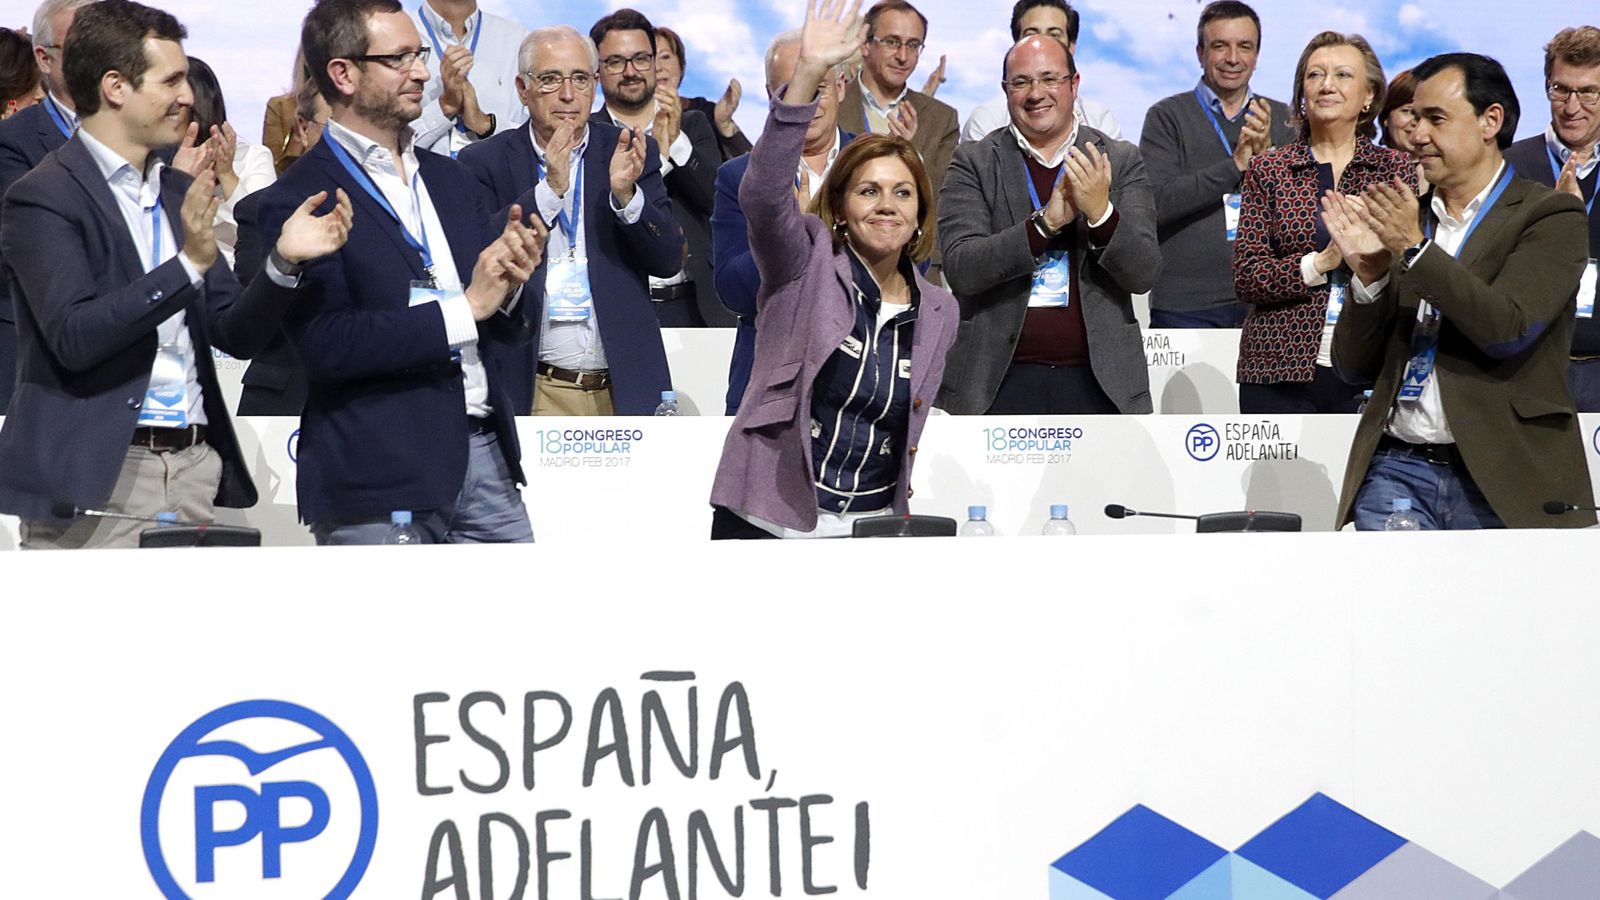 Foto:  La secretaria general del PP, María Dolores de Cospedal, recibe el aplauso tras ser ratificada en su cargo por el presidente del PP, Mariano Rajoy, durante la segunda jornada del XVIII Congreso. (EFE)